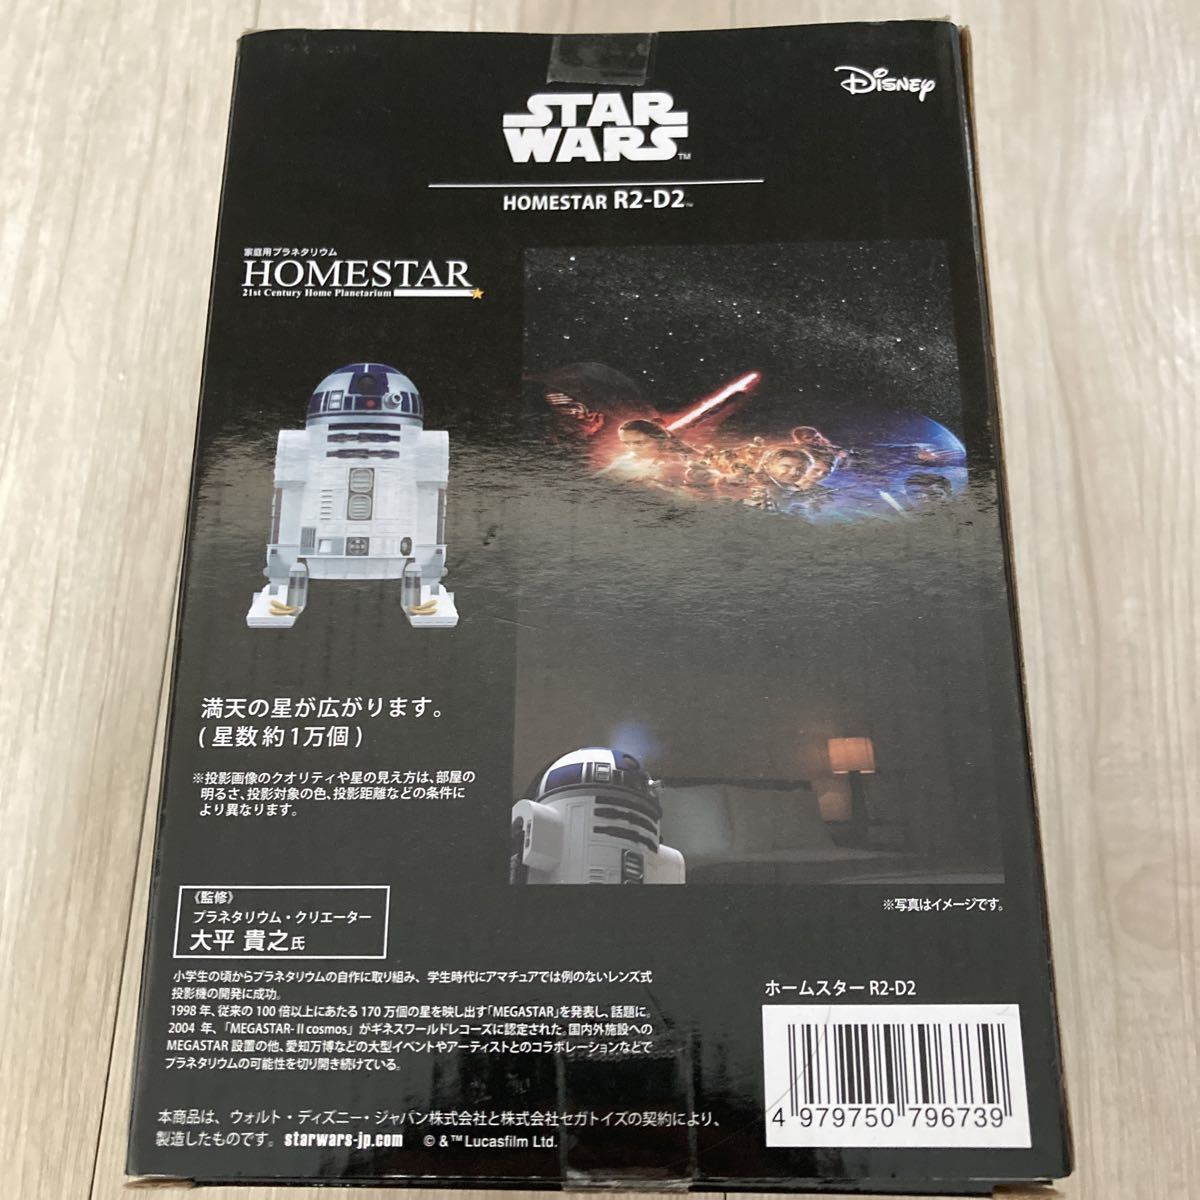 新品未使用品 スターウォース R2-D2ホームスター プラネタリウム